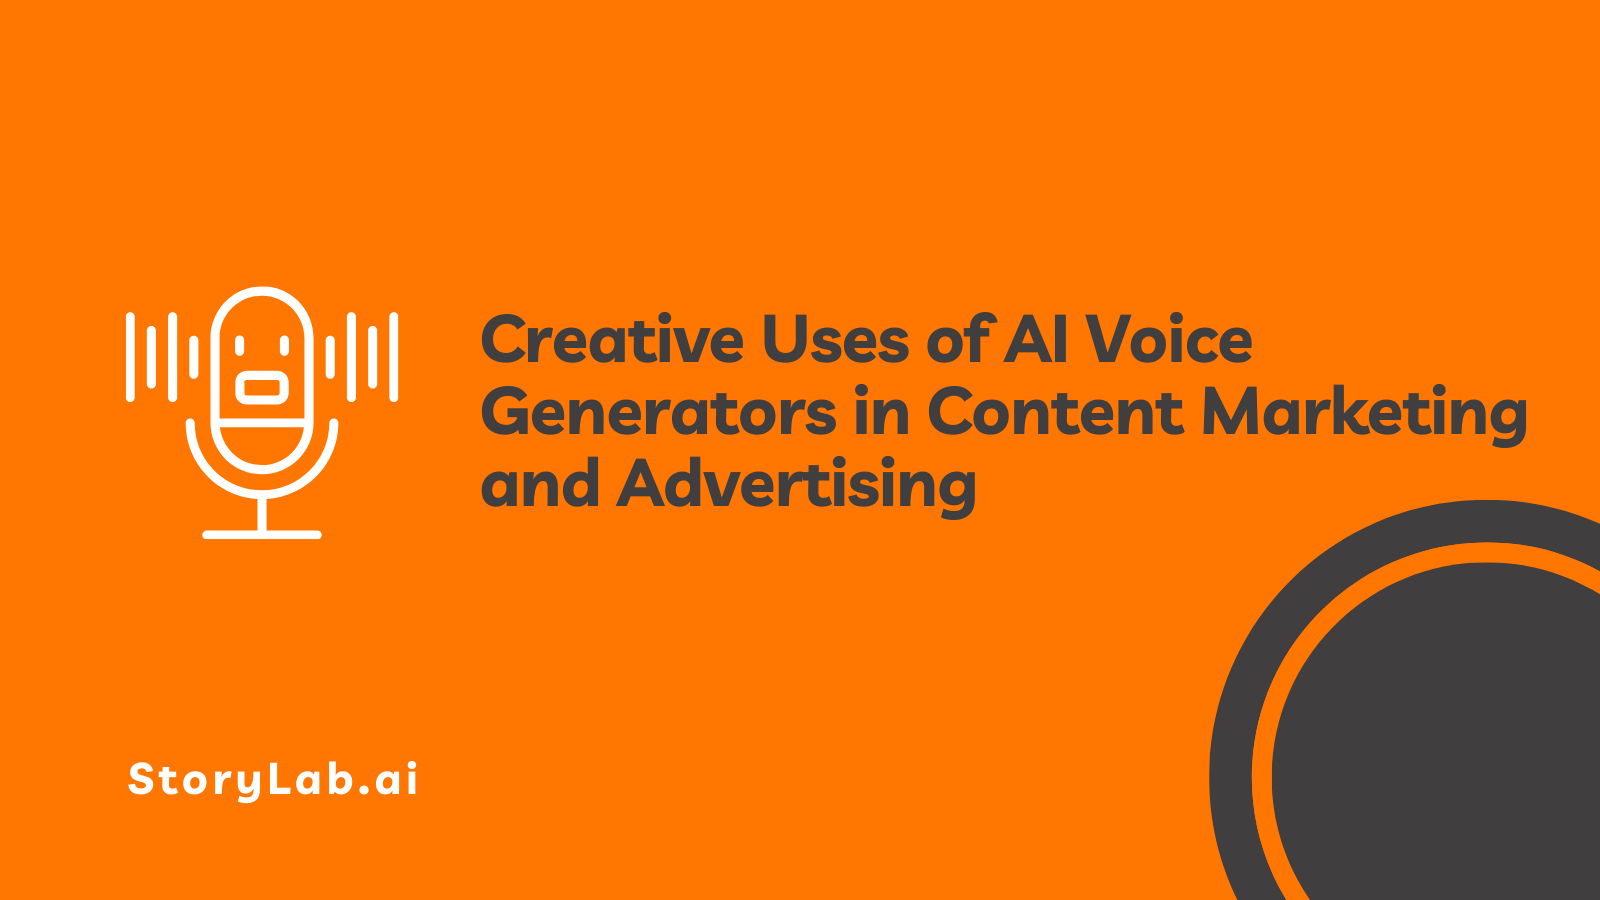 Usi creativi dei generatori vocali AI nel content marketing e nella pubblicità